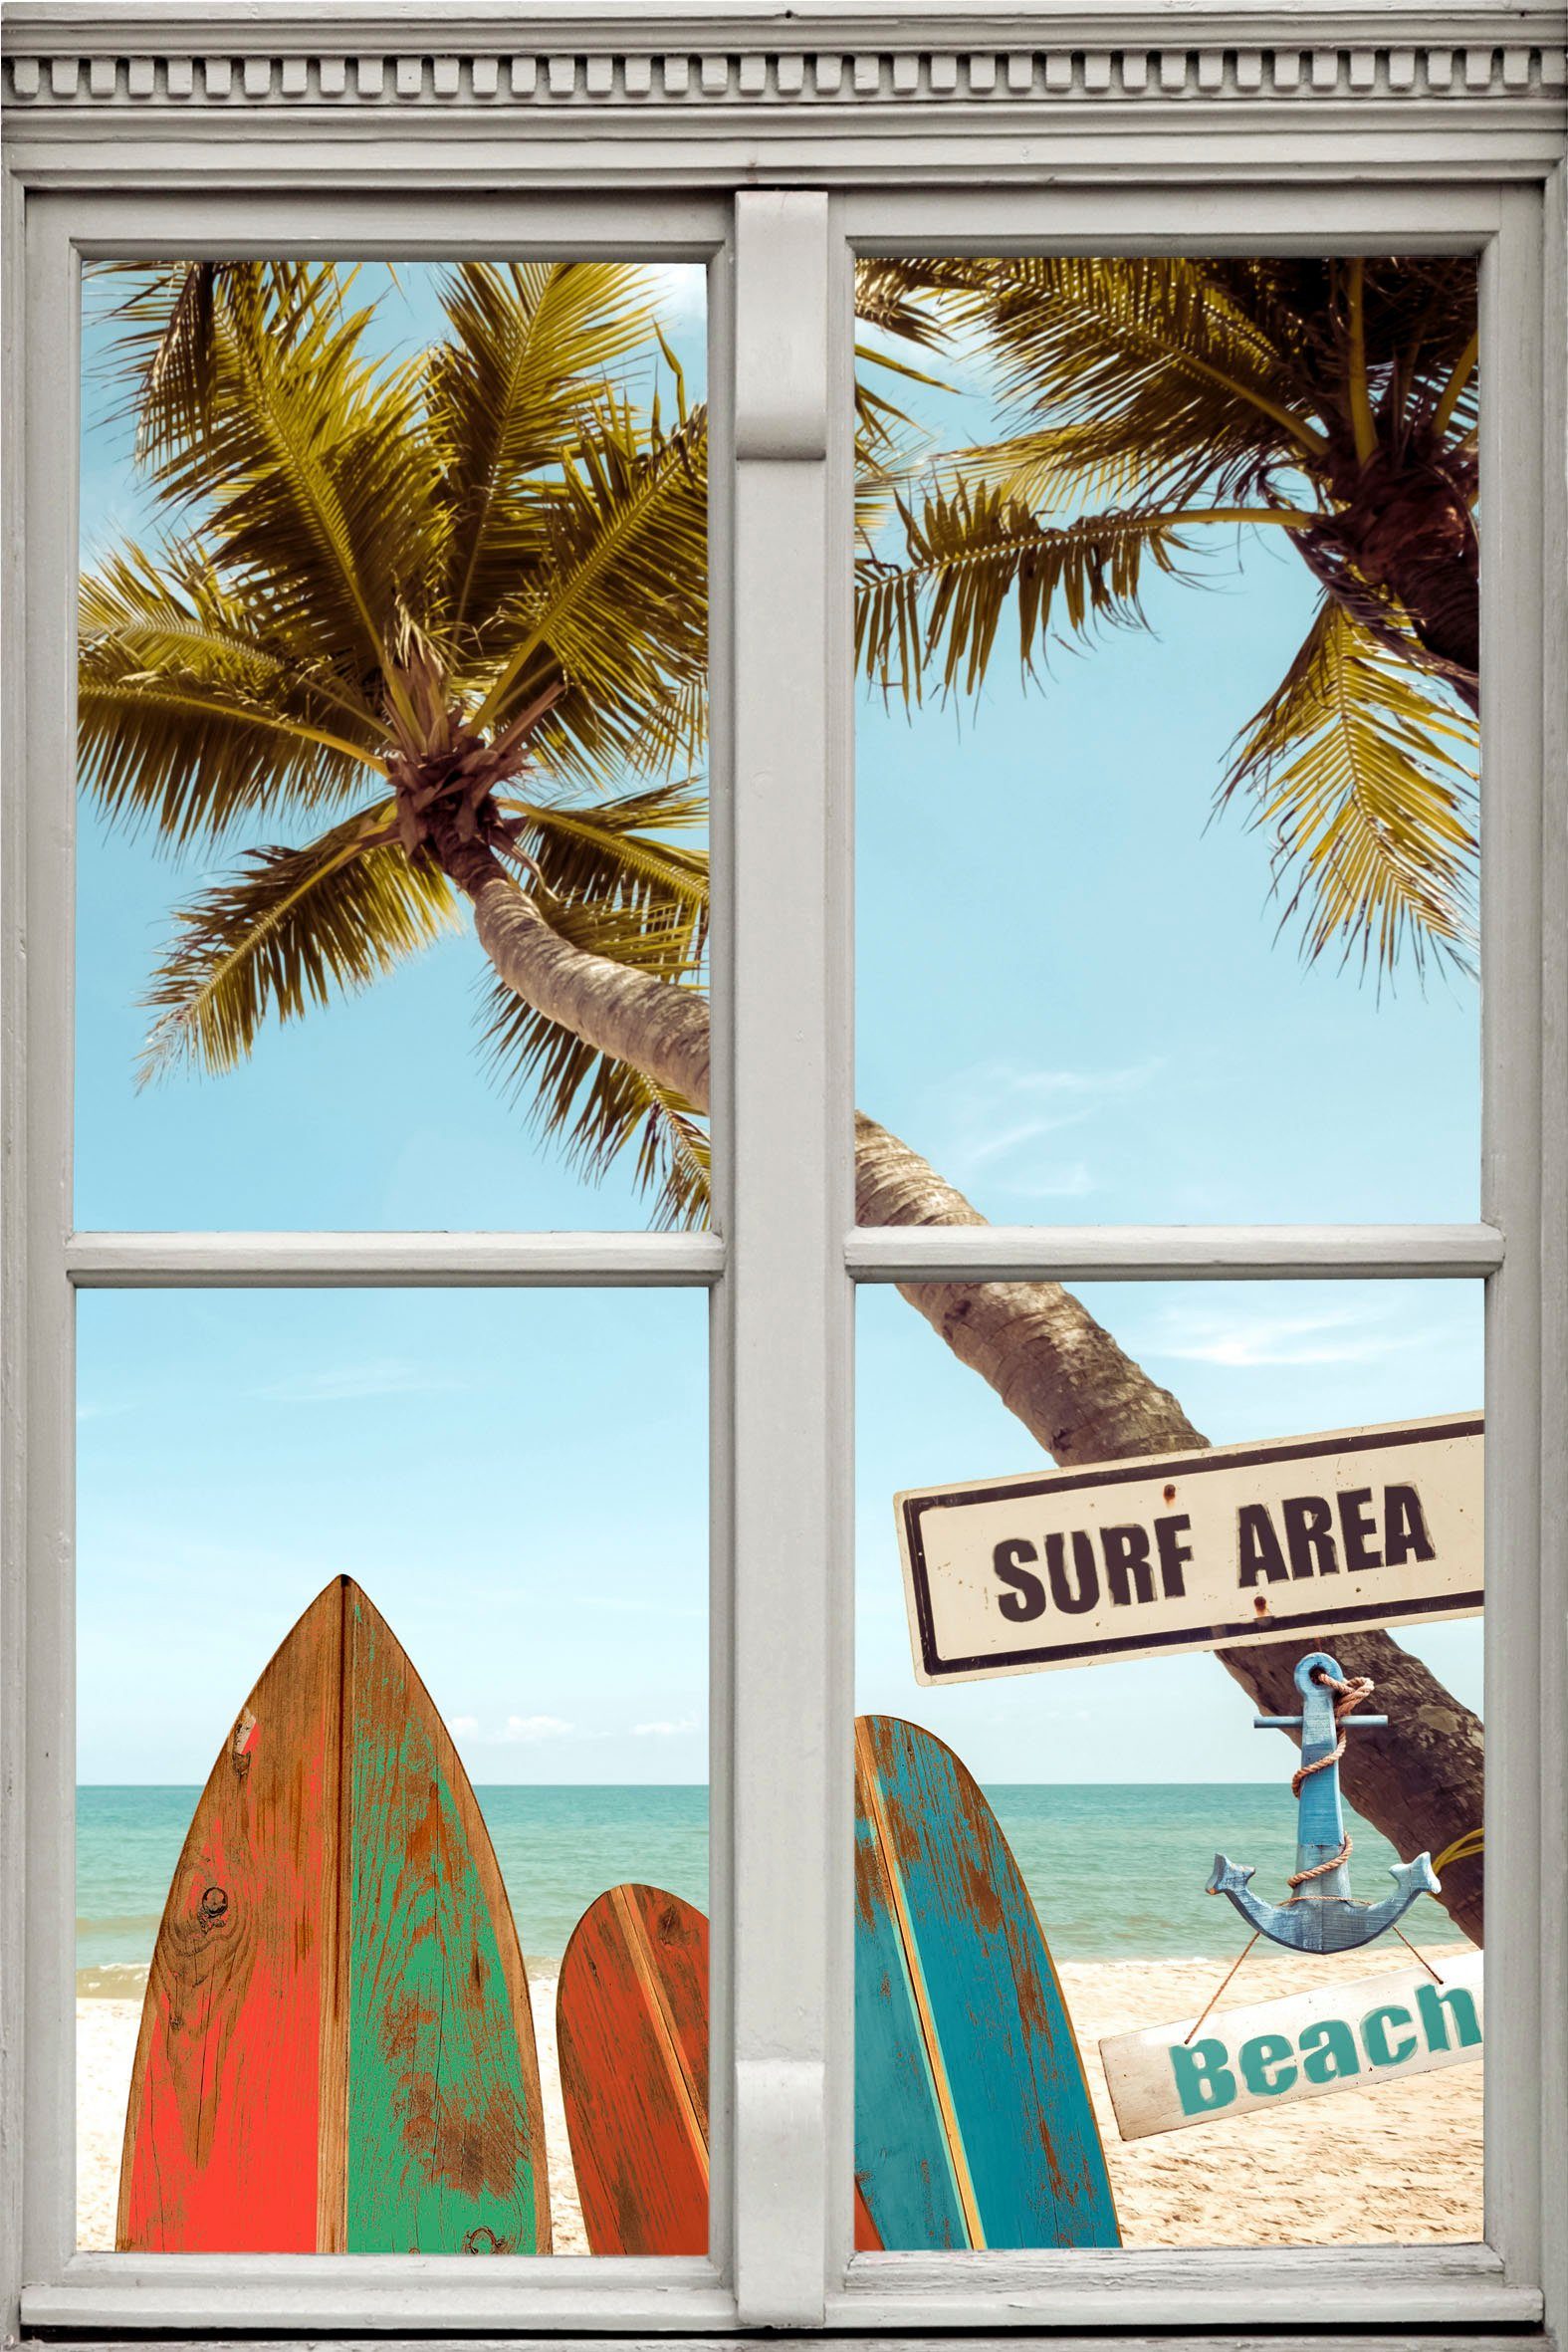 [Kostenloser Versand nur für begrenzte Zeit] queence Wandsticker Surf Area Beach